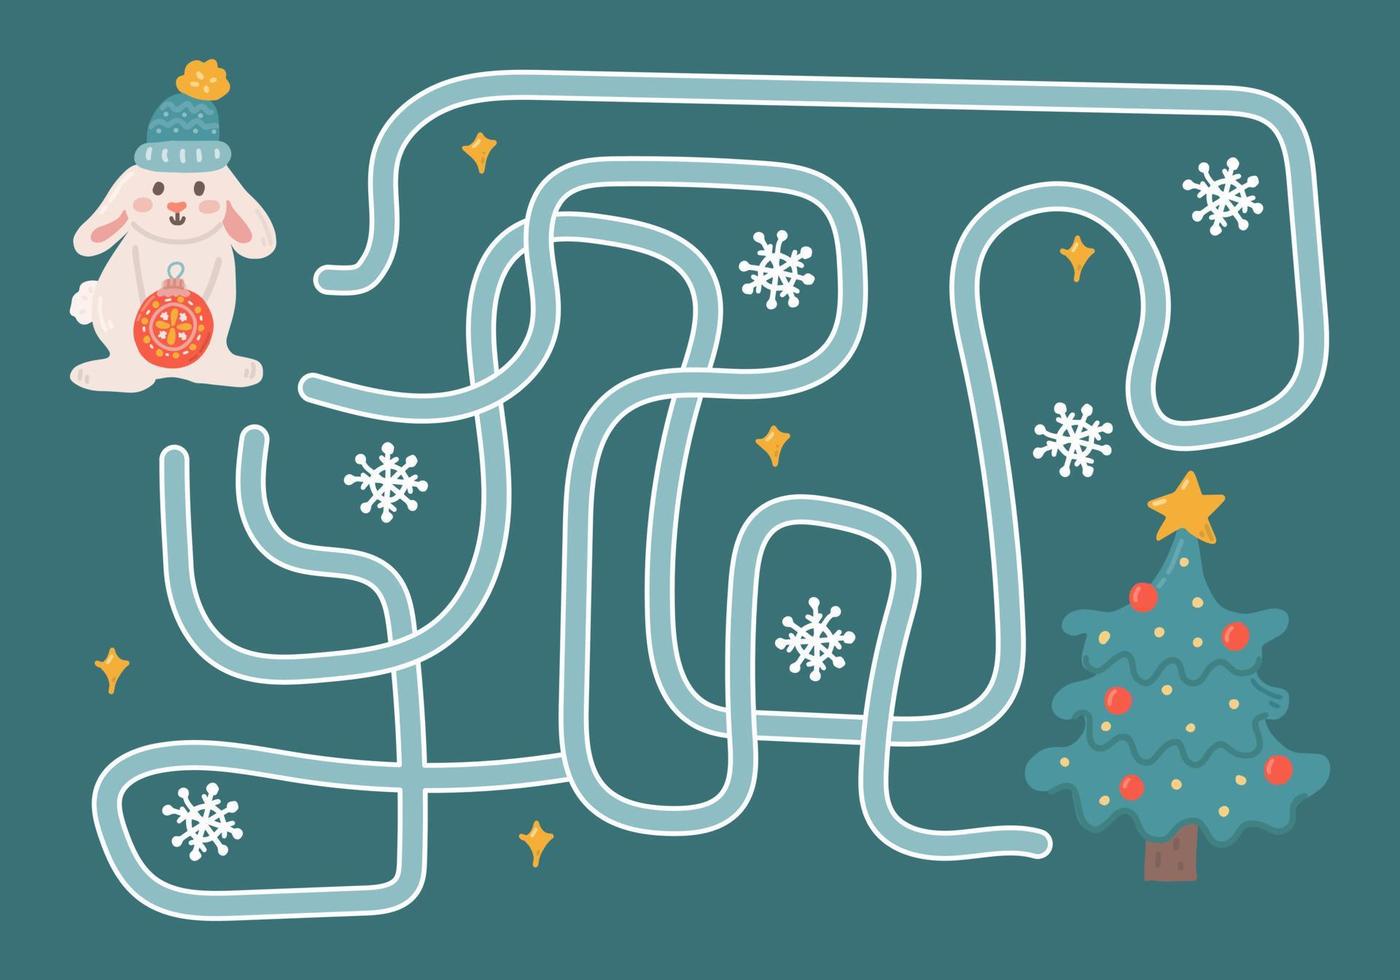 Labyrinth, hilf dem Hasen den richtigen Weg zum Weihnachtsbaum zu finden. logische Suche für Kinder. süße illustration für kinderbücher, lernspiel vektor